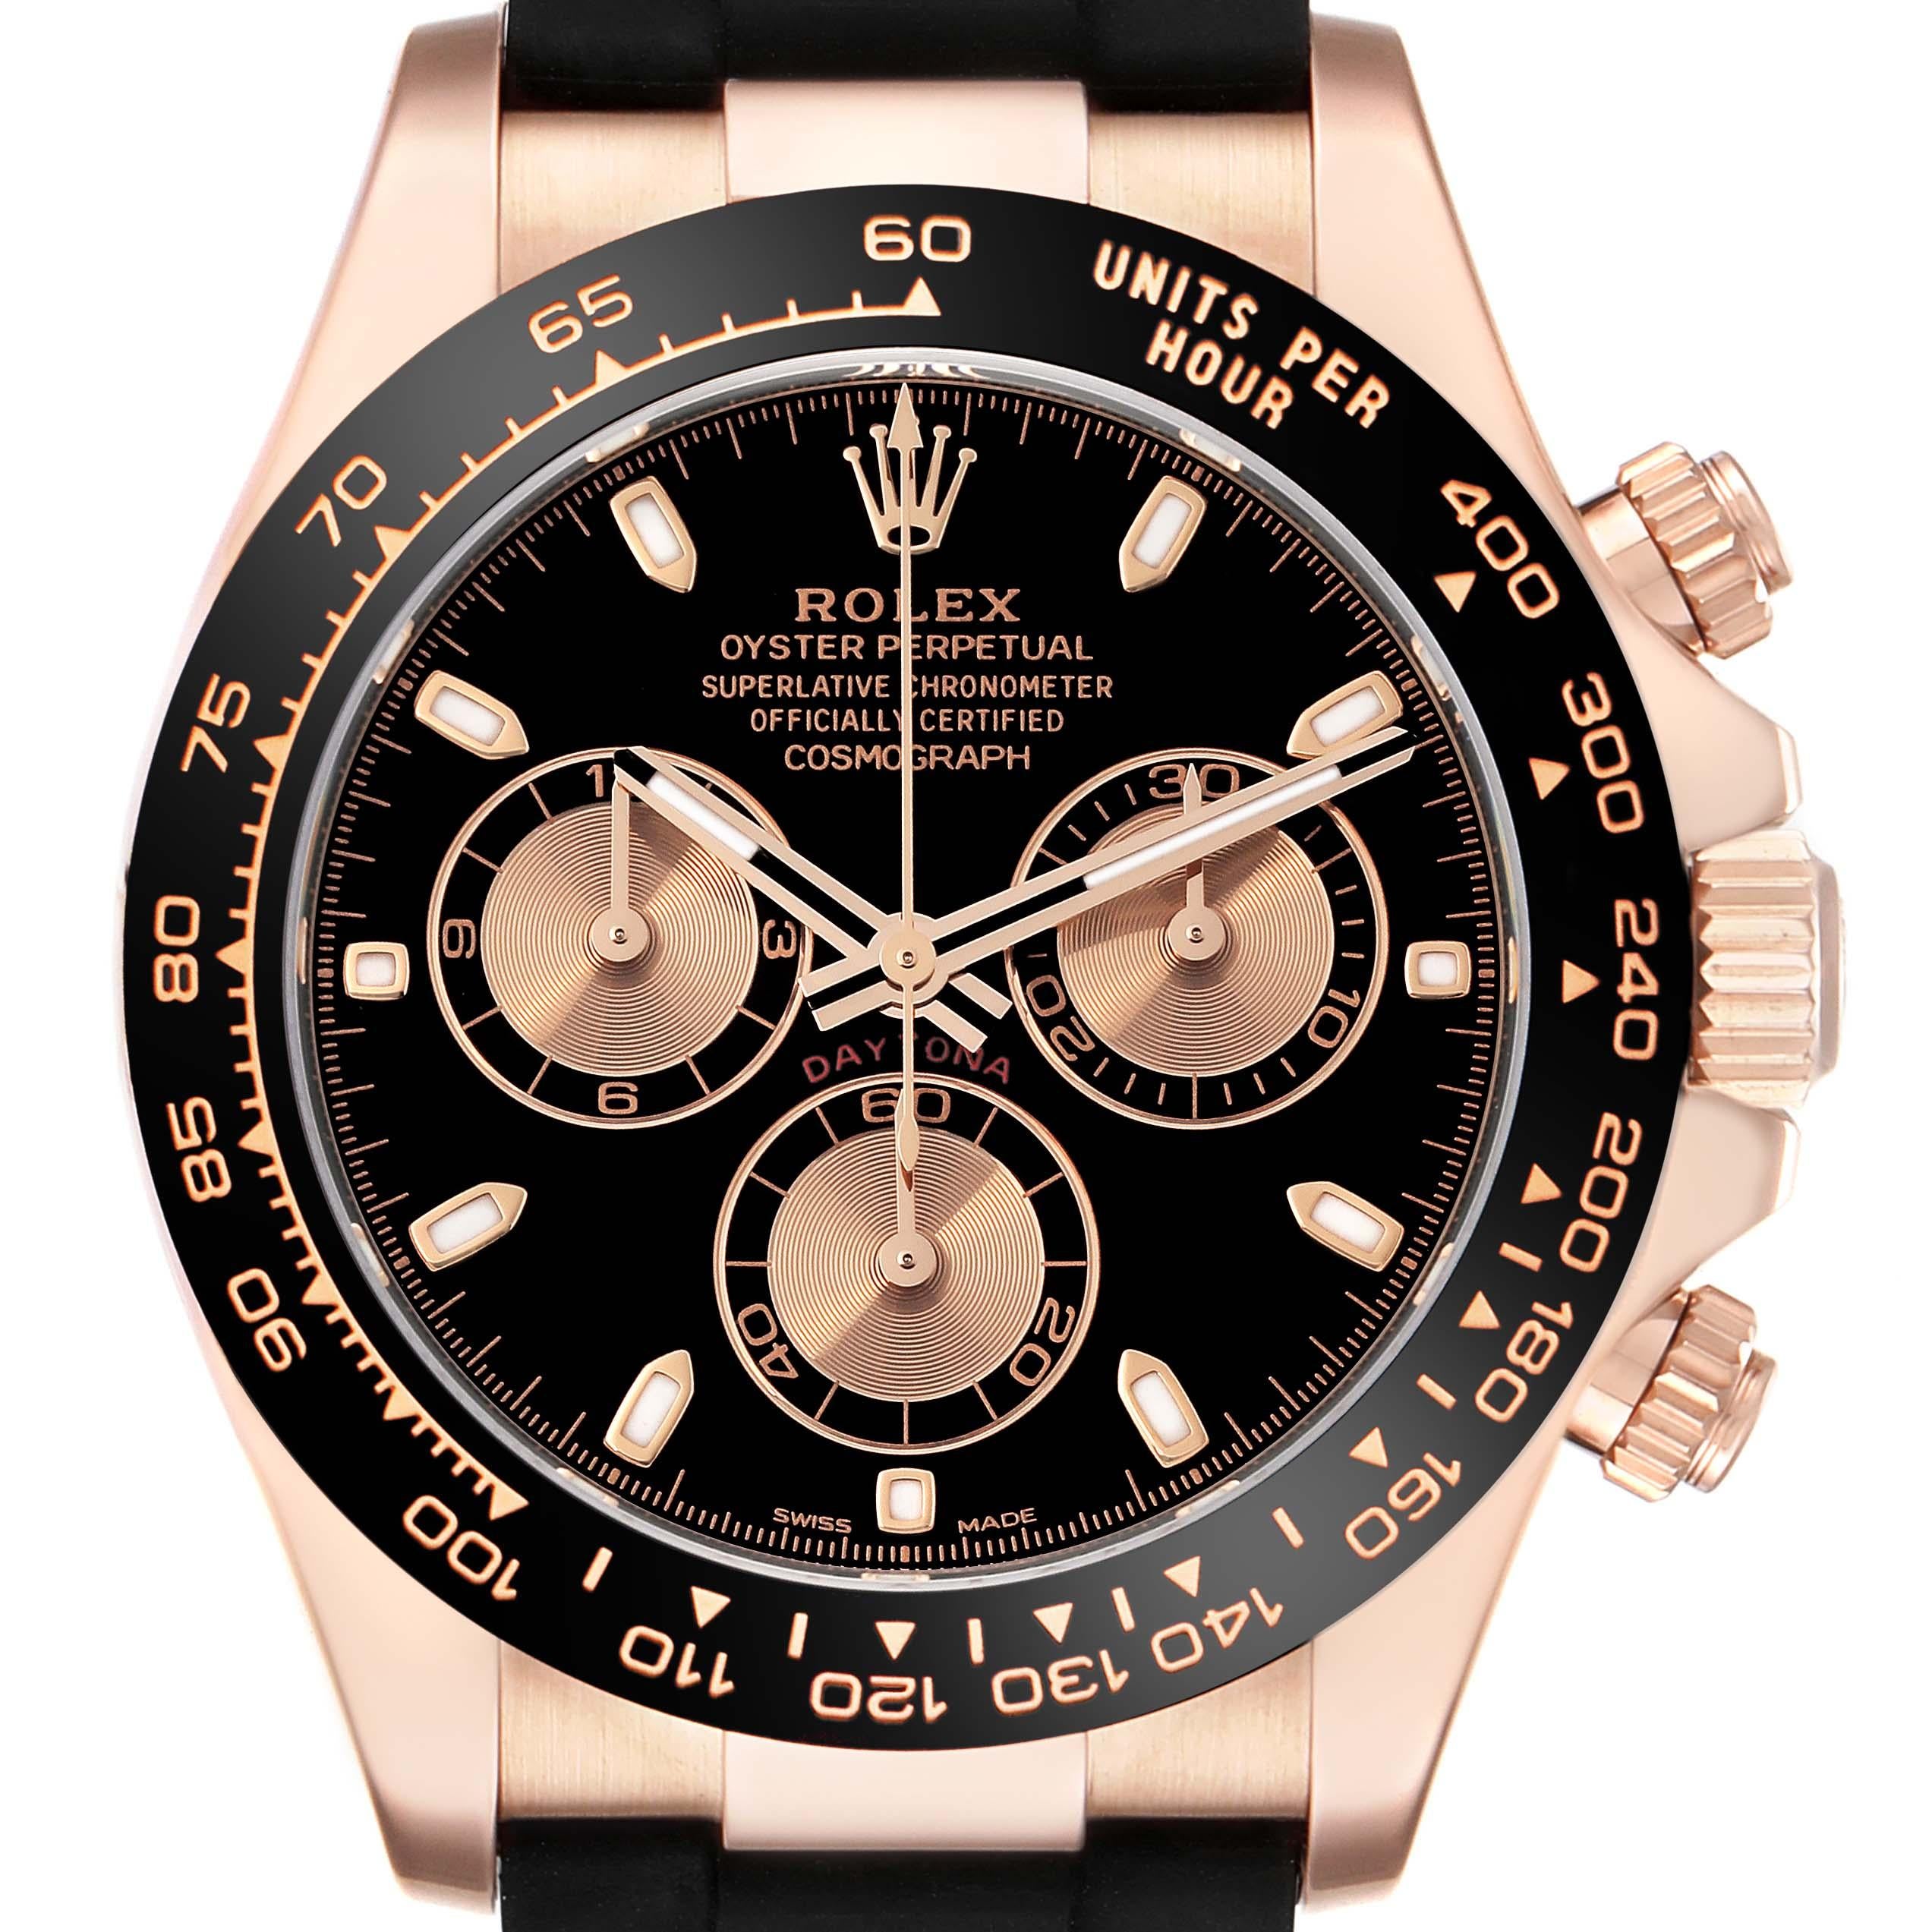 Rolex Cosmograph Daytona Oysterflex Rose Gold Mens Watch 116515. Mouvement à remontage automatique certifié chronomètre. Boîtier en or rose 18 carats de 40,0 mm de diamètre. Boutons poussoirs spéciaux à visser. Fond vissé. Poussoirs et couronne du